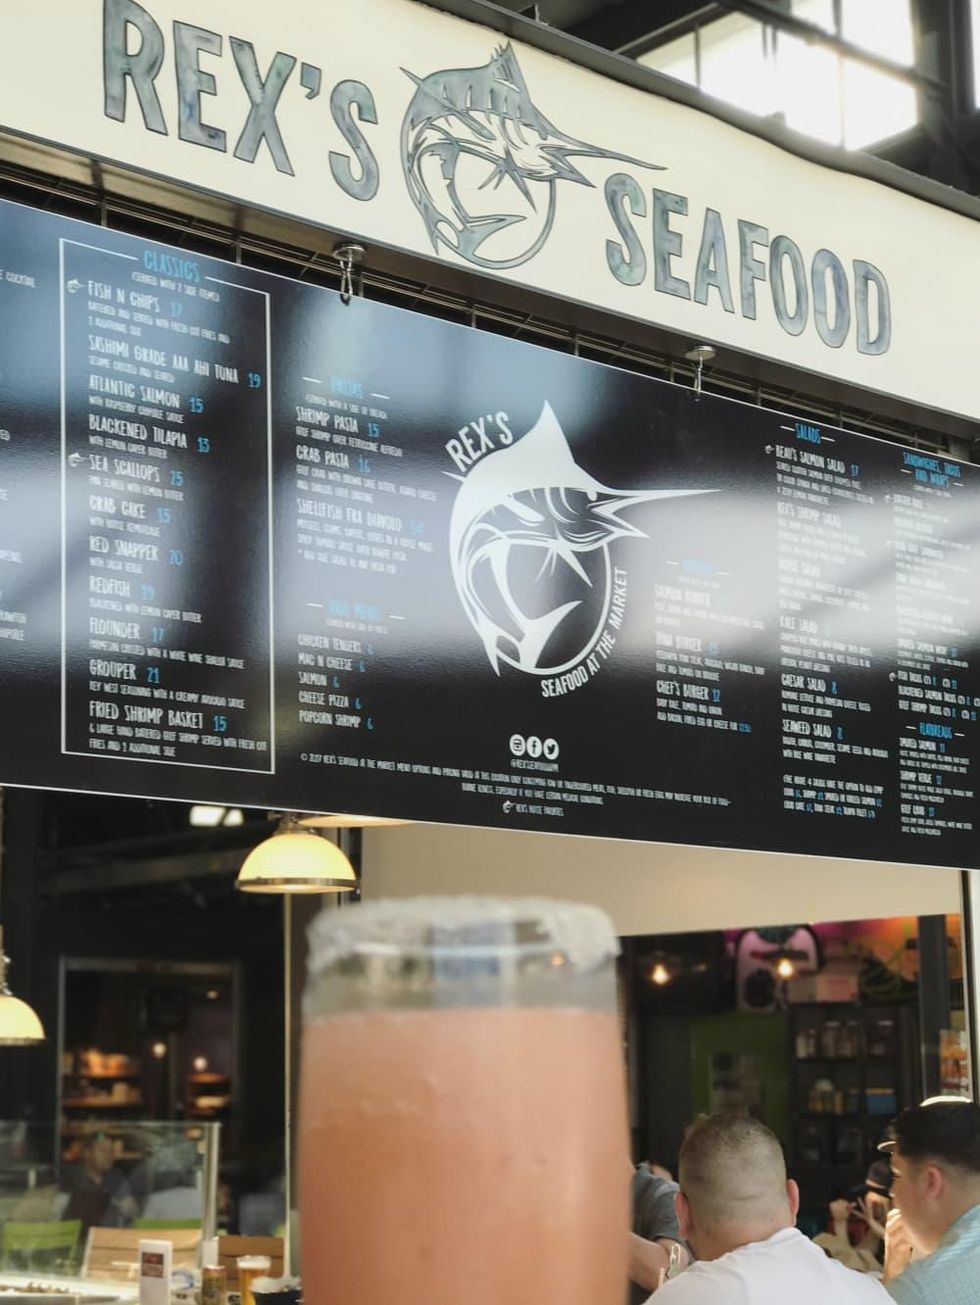 Rex's Seafood menu and frose